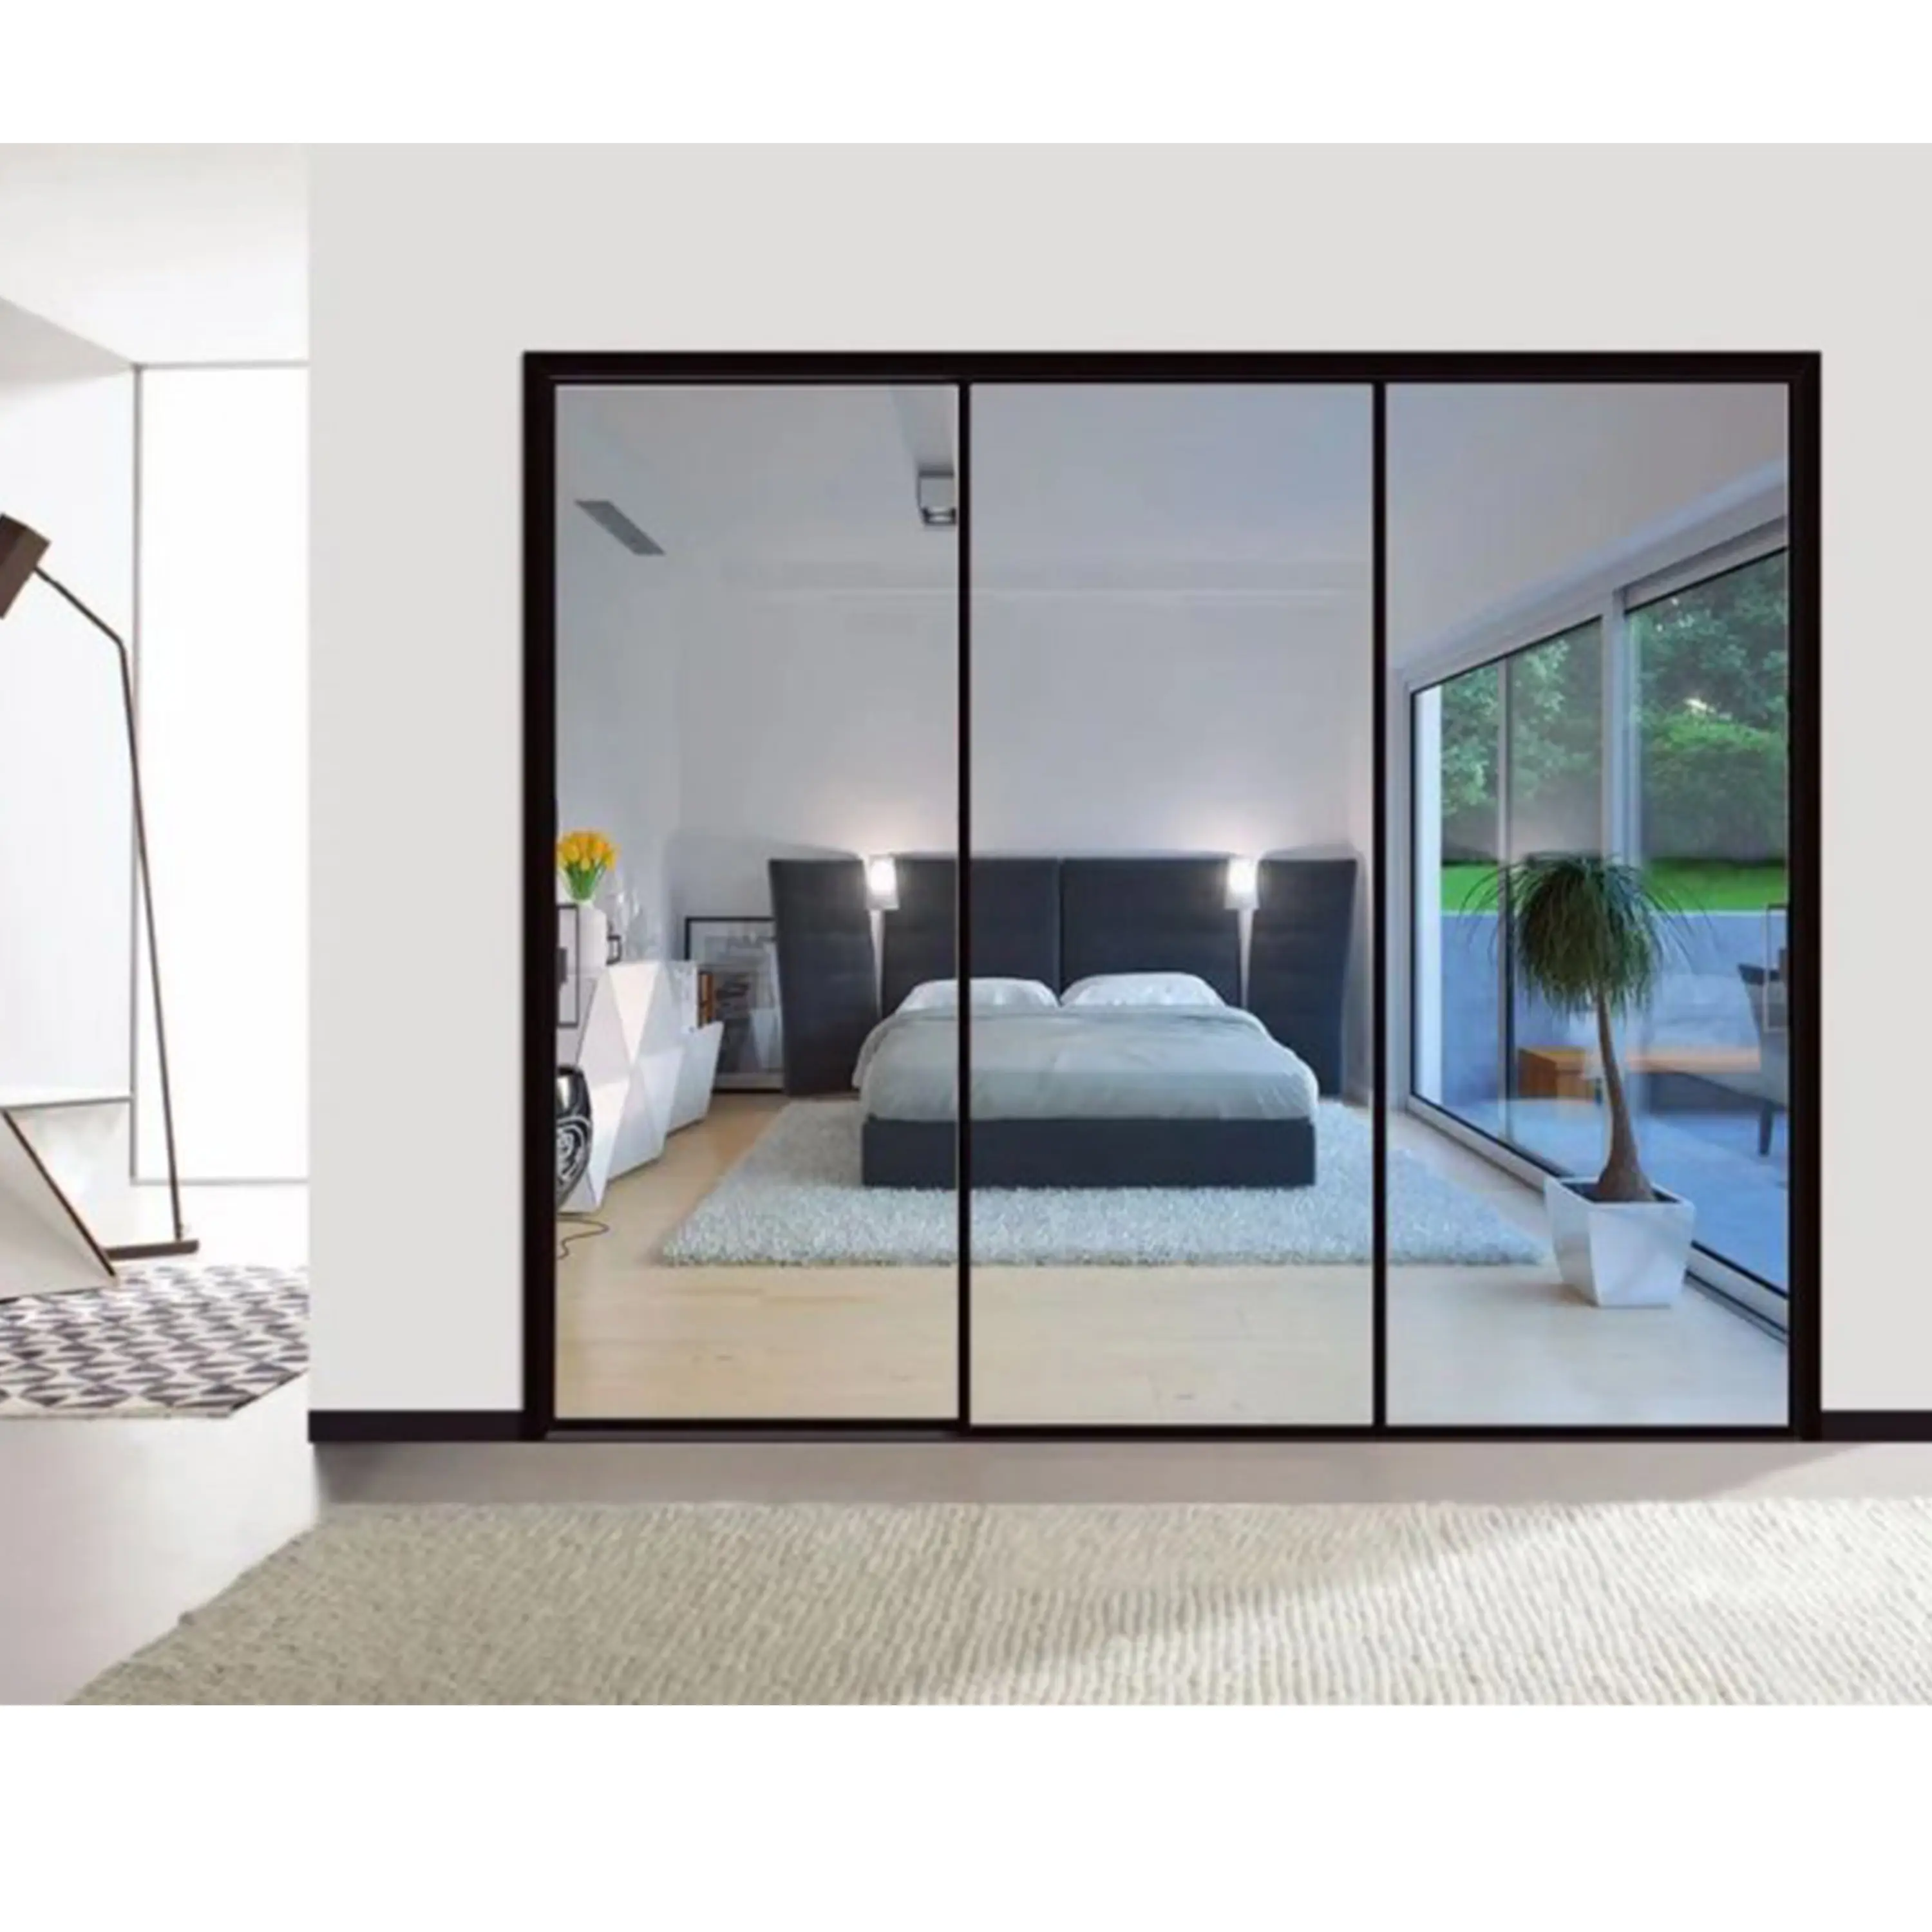 Système de portes coulissantes multiples en verre suspendu hydraulique pour salon cuisine intérieur pleine vue cloison vitrée